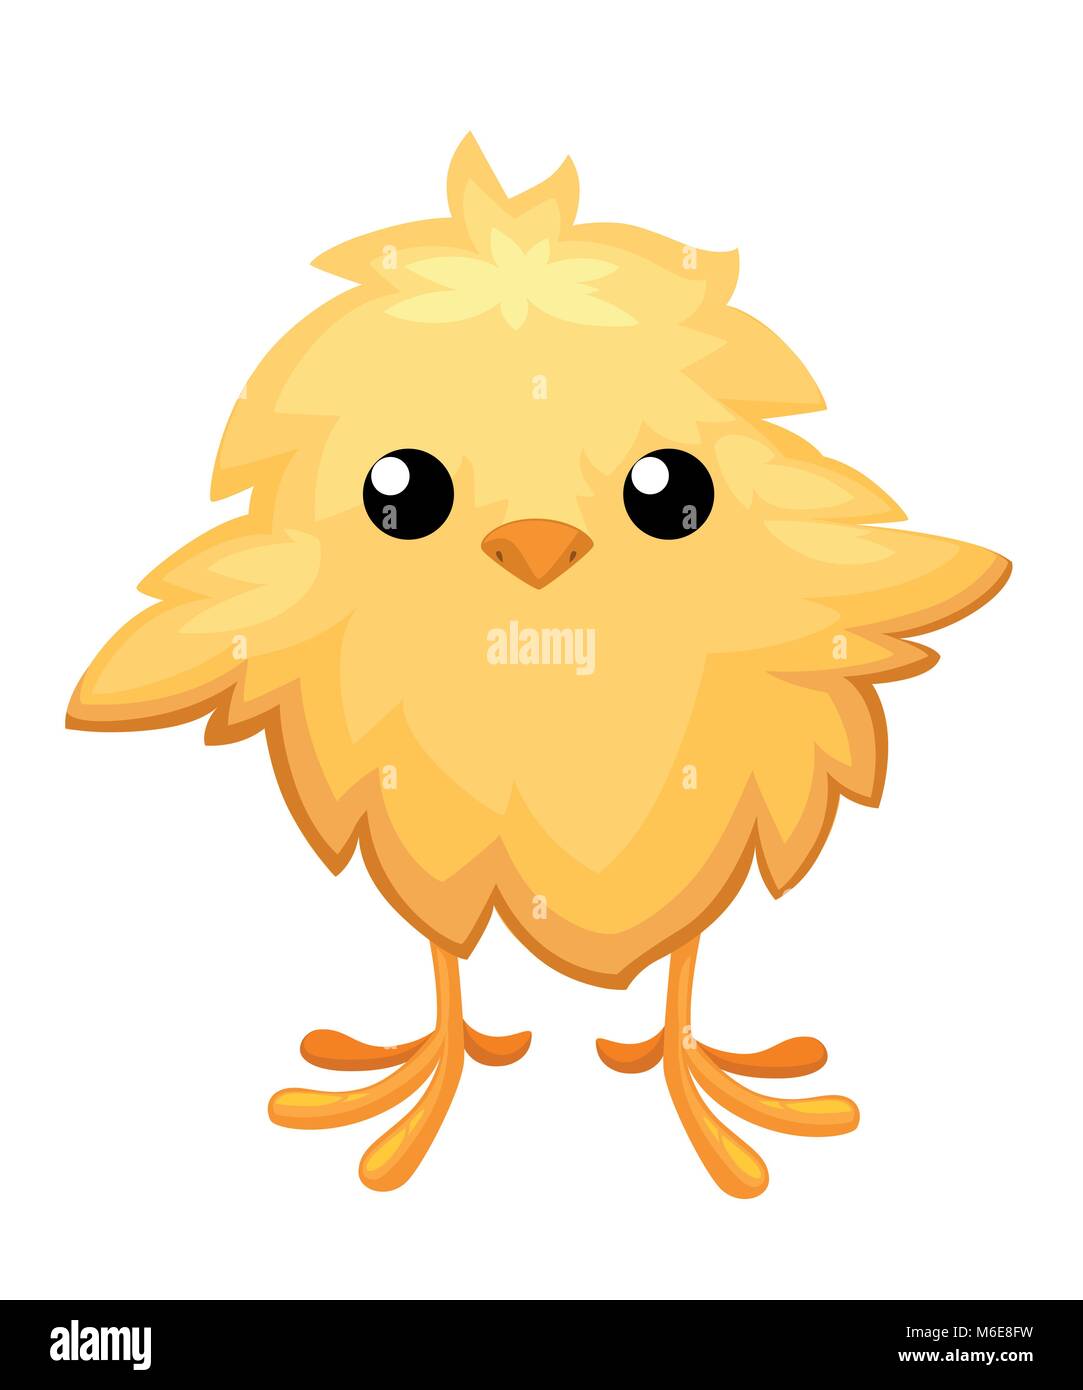 Lustige Huhn im Ei zu Ostern Dekoration cartoon Vektor Flachbild clipart gelben Vogel in einer Eihülle Vector Illustration auf weißem Hintergrund Stock Vektor